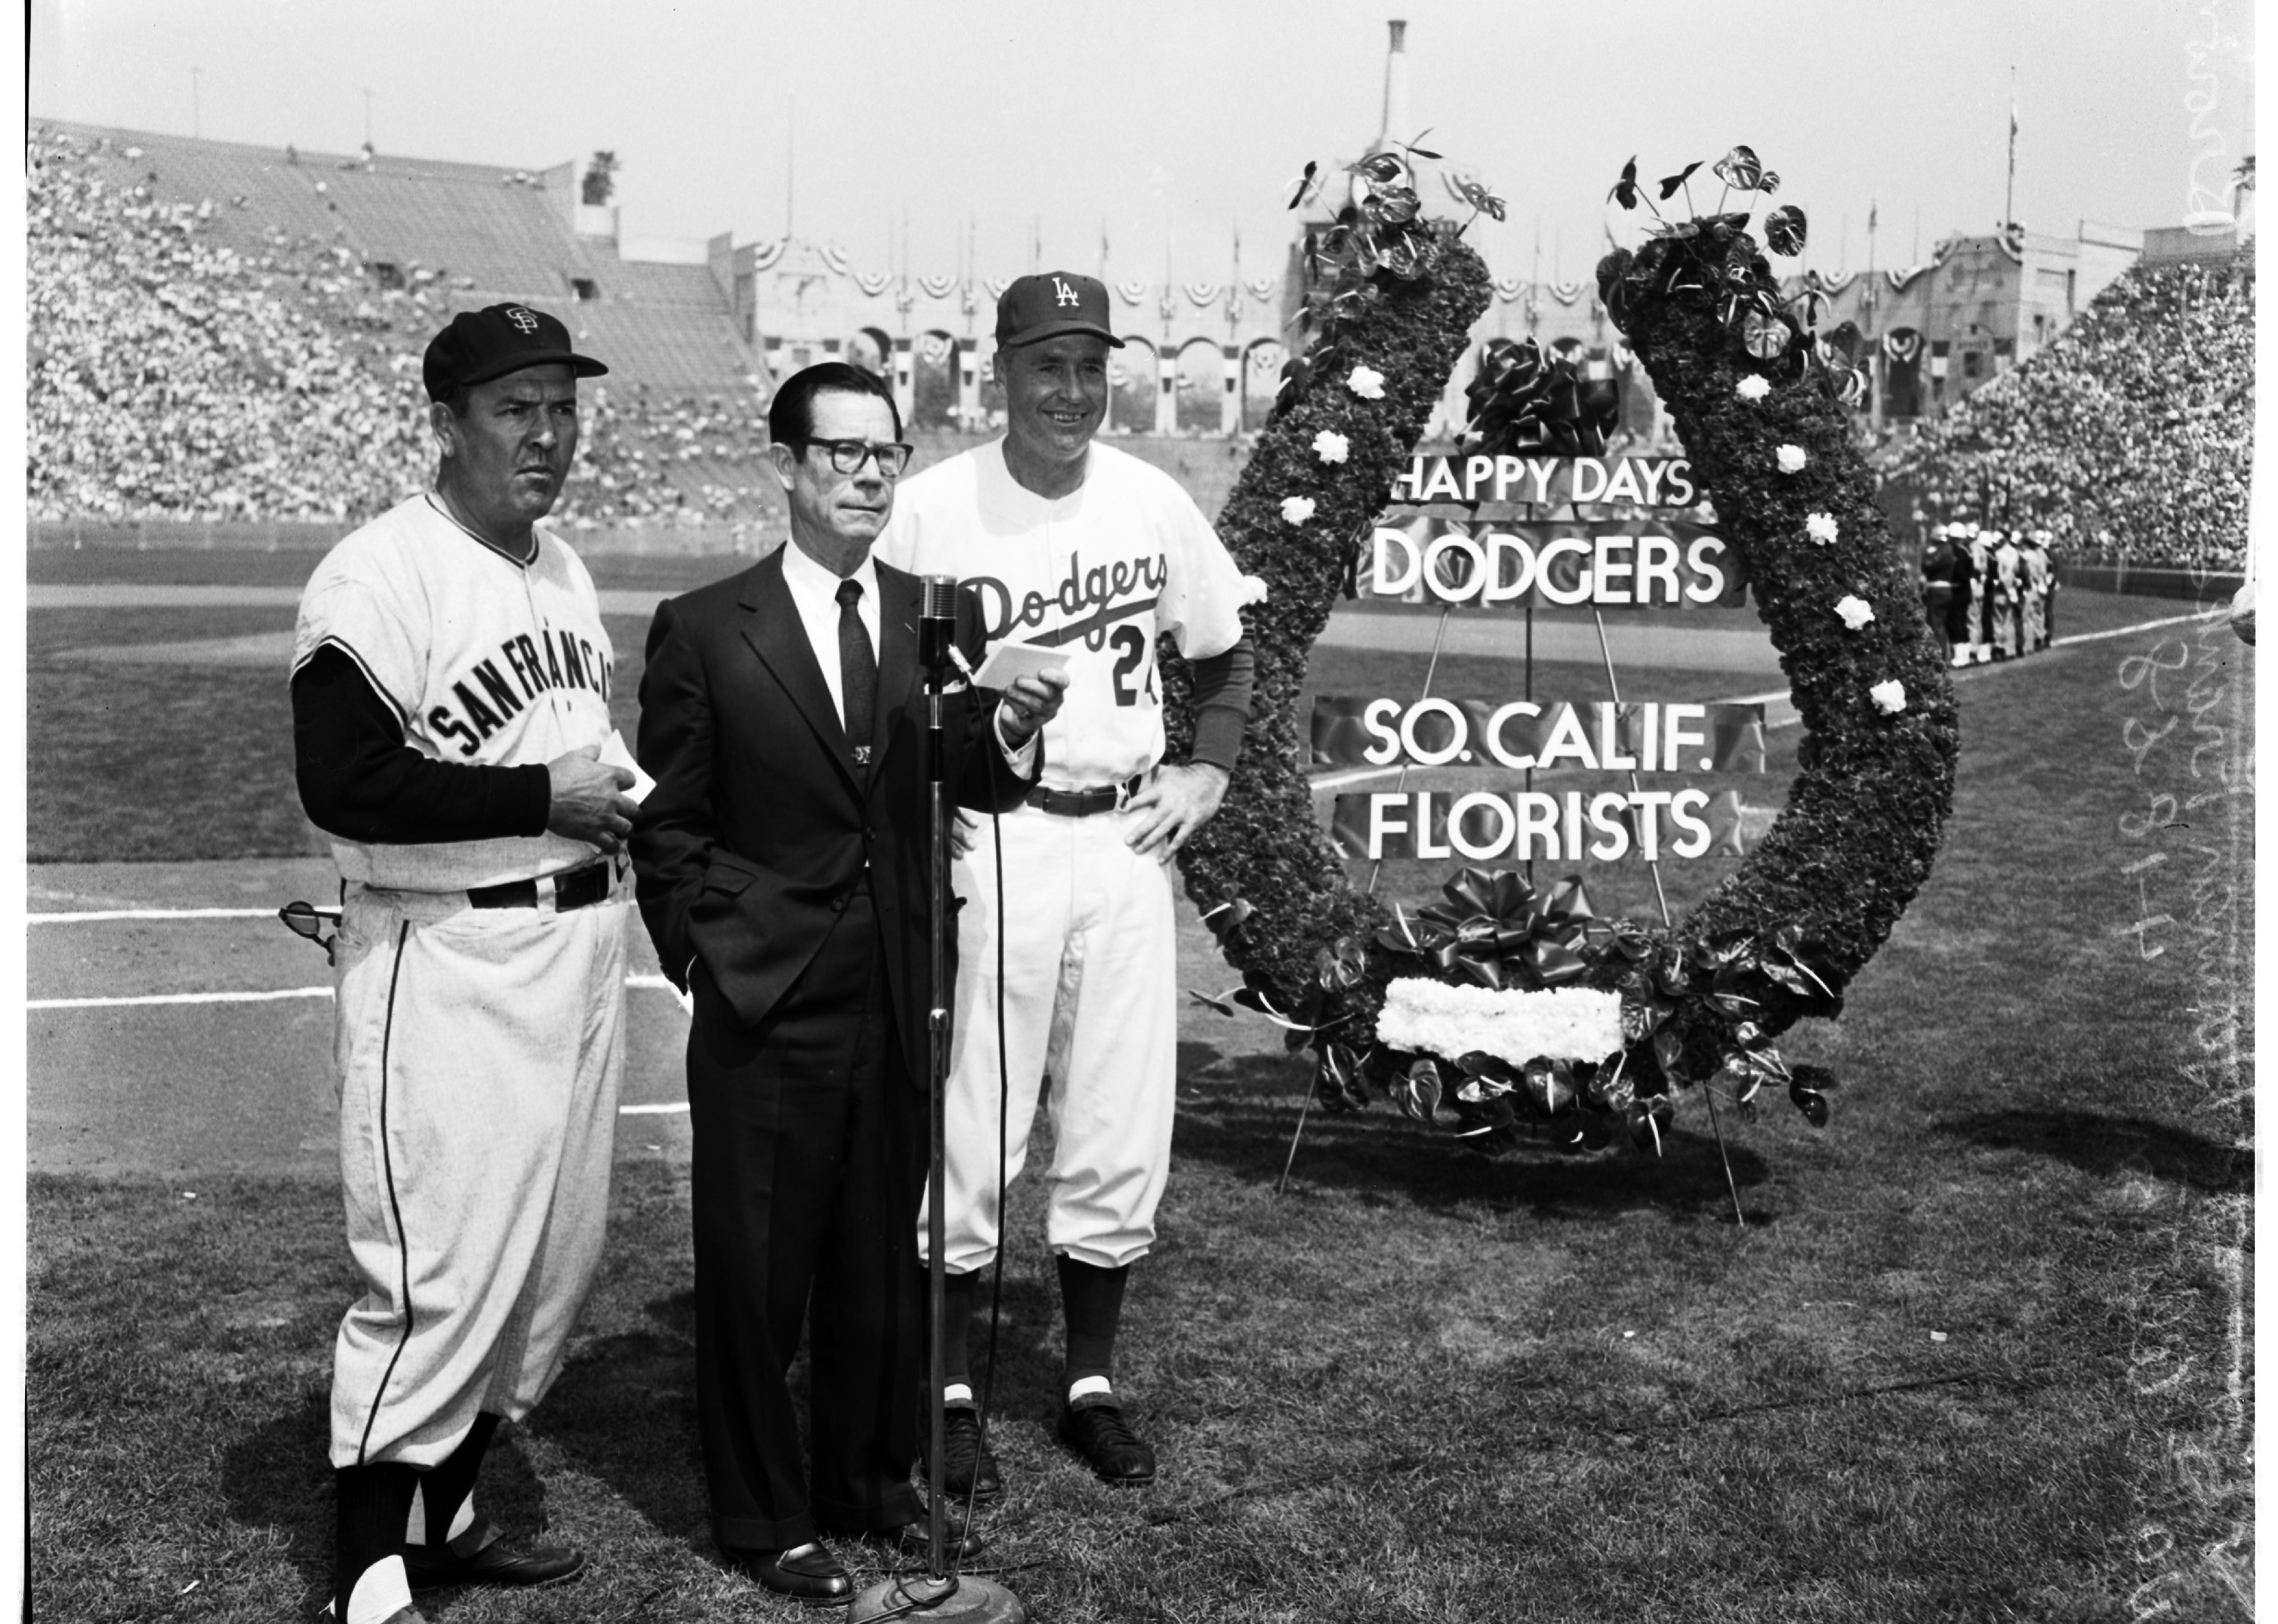 Dodgers versus Giants, opening day, 1958.